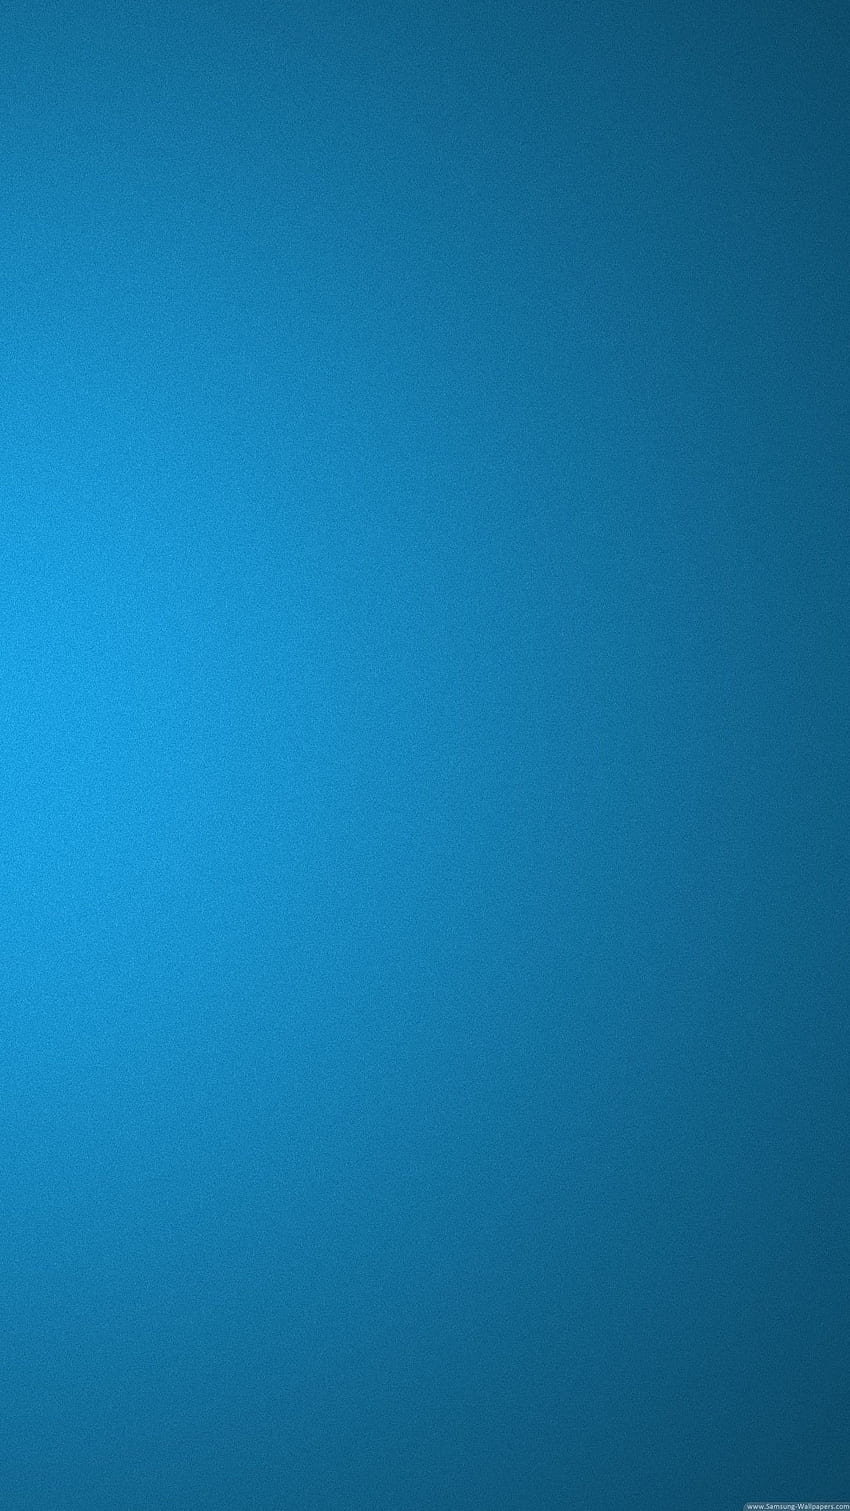 de bloqueo de azul Samsung Galaxy S5 - Ropa. Color iphone, S5, azul, azul claro liso fondo de pantalla del teléfono